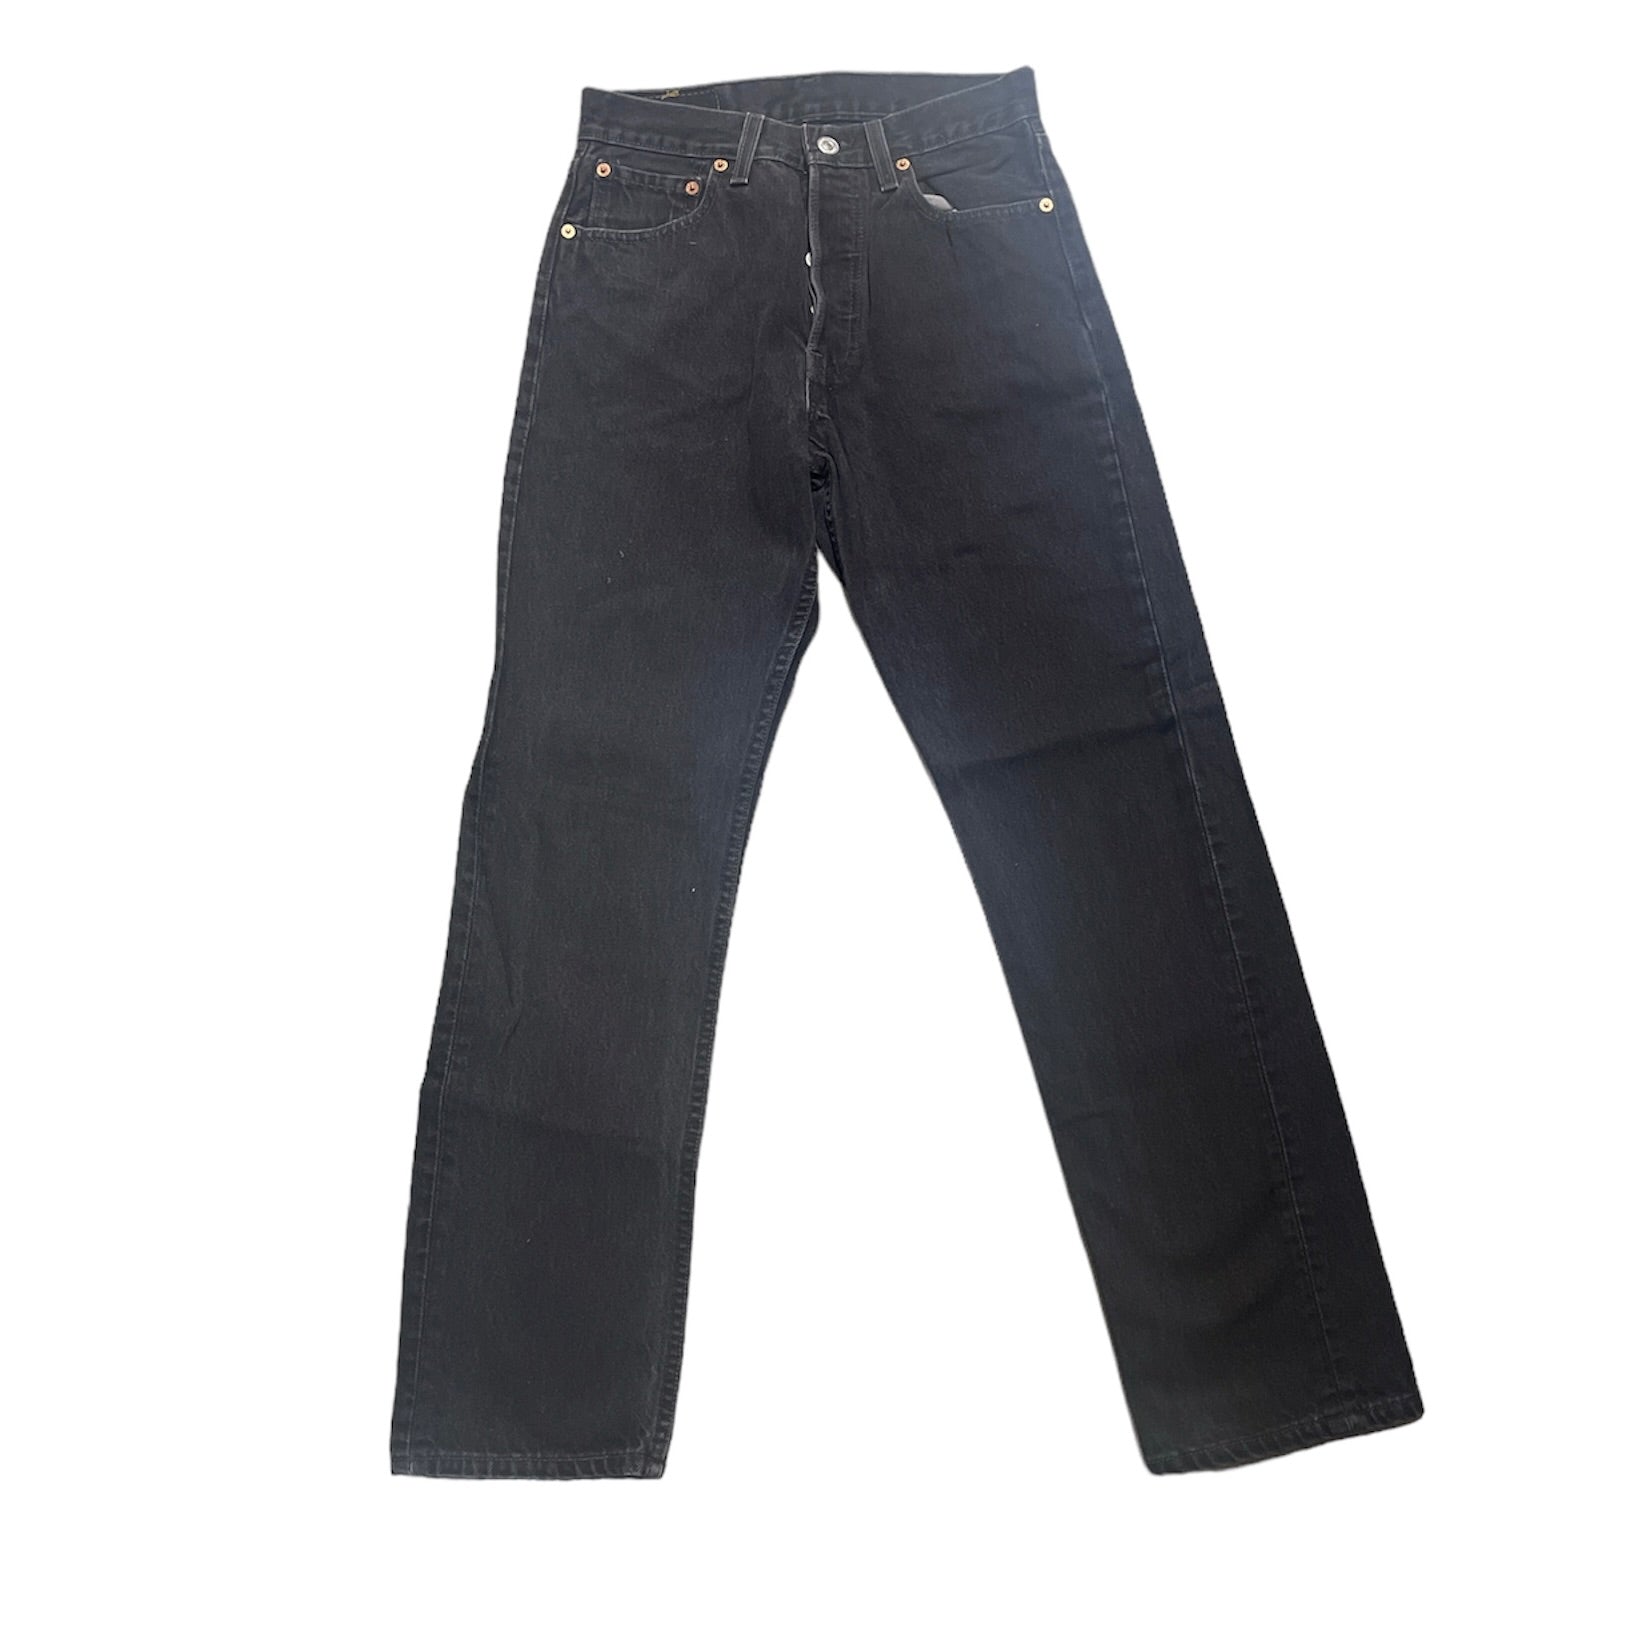 Vintage Levis 501 Vintage Black Jeans (W28/L30)